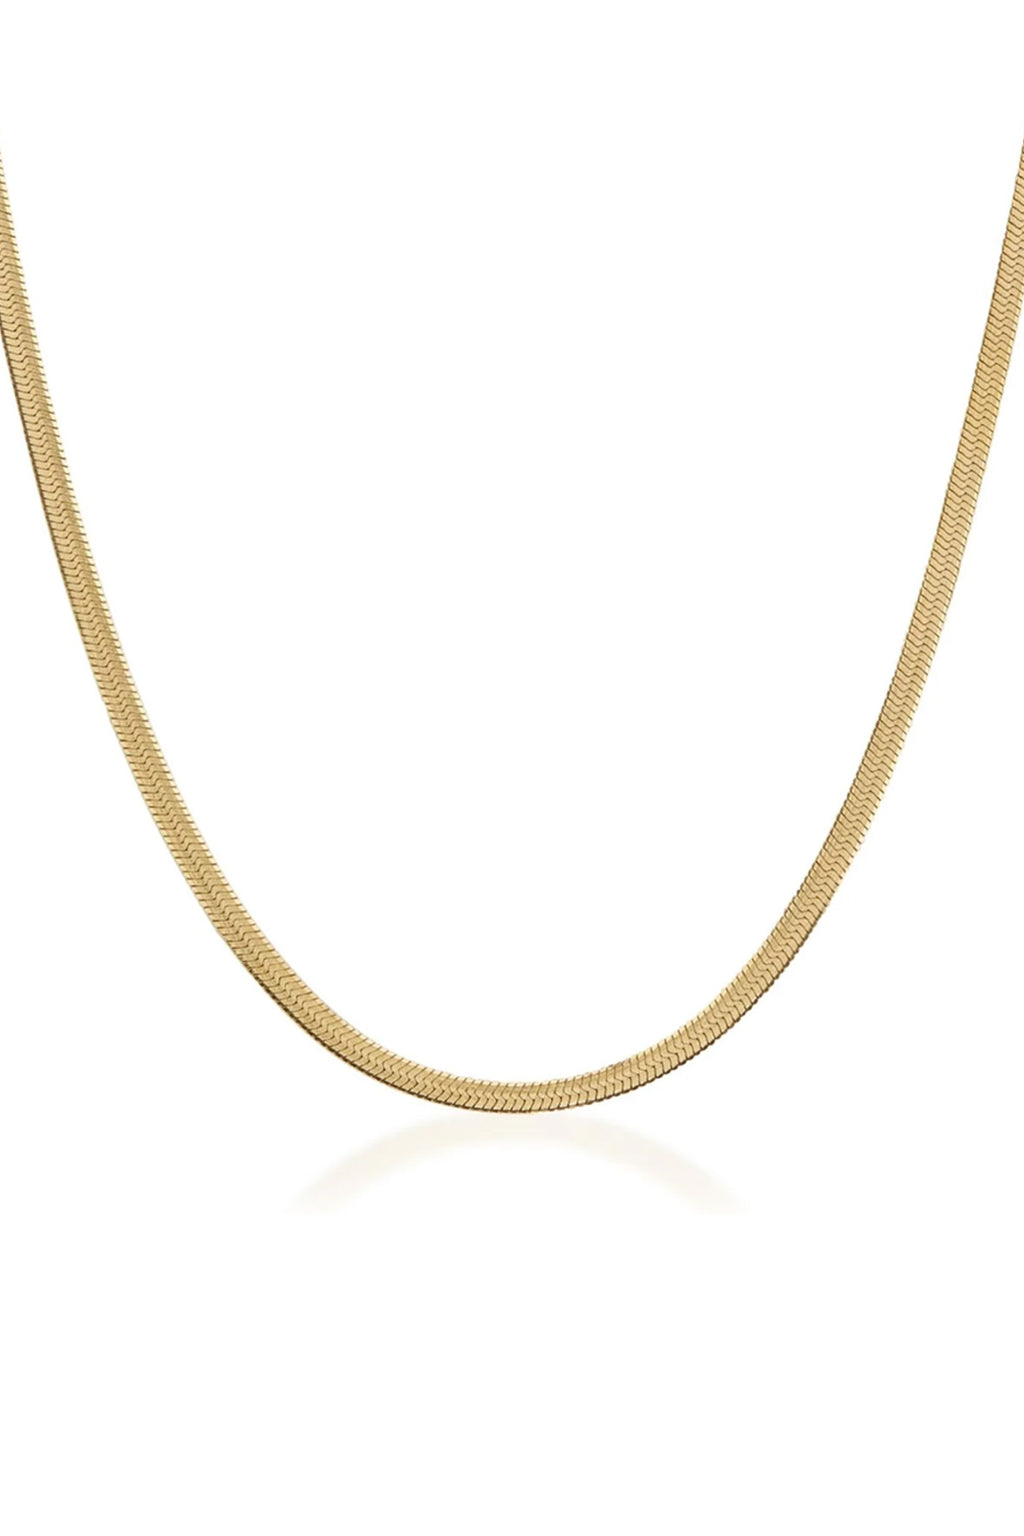 Saint Valentine - Sphinx Snake Chain Necklace - Gold